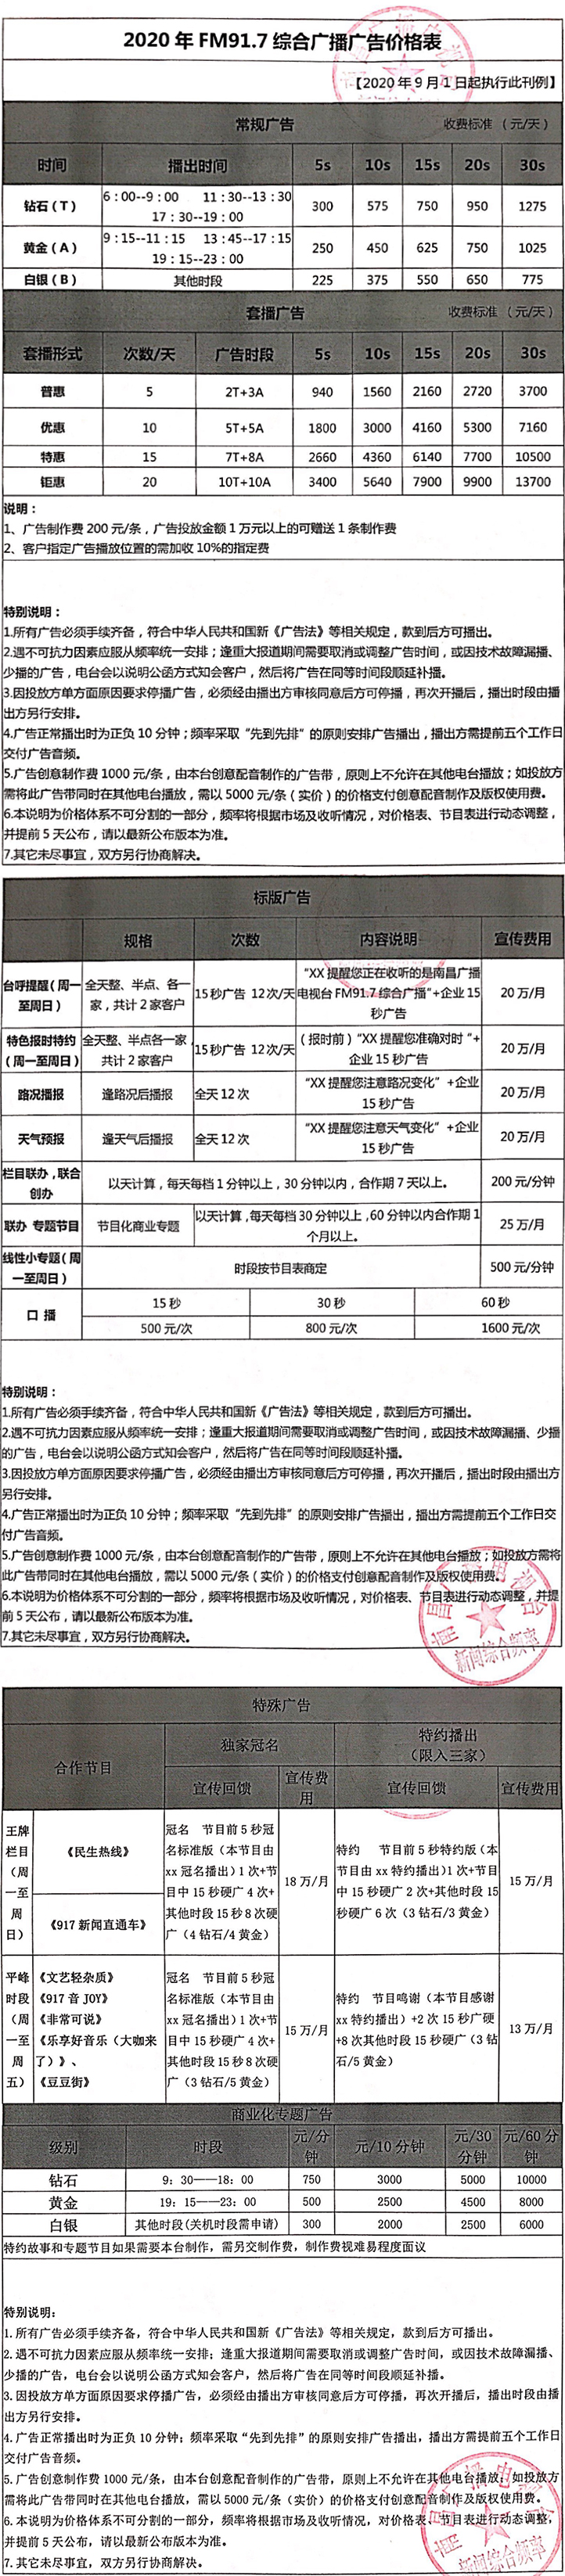 2021南昌人民广播电台新闻综合频率 FM91.7MHz广告报价表.jpg